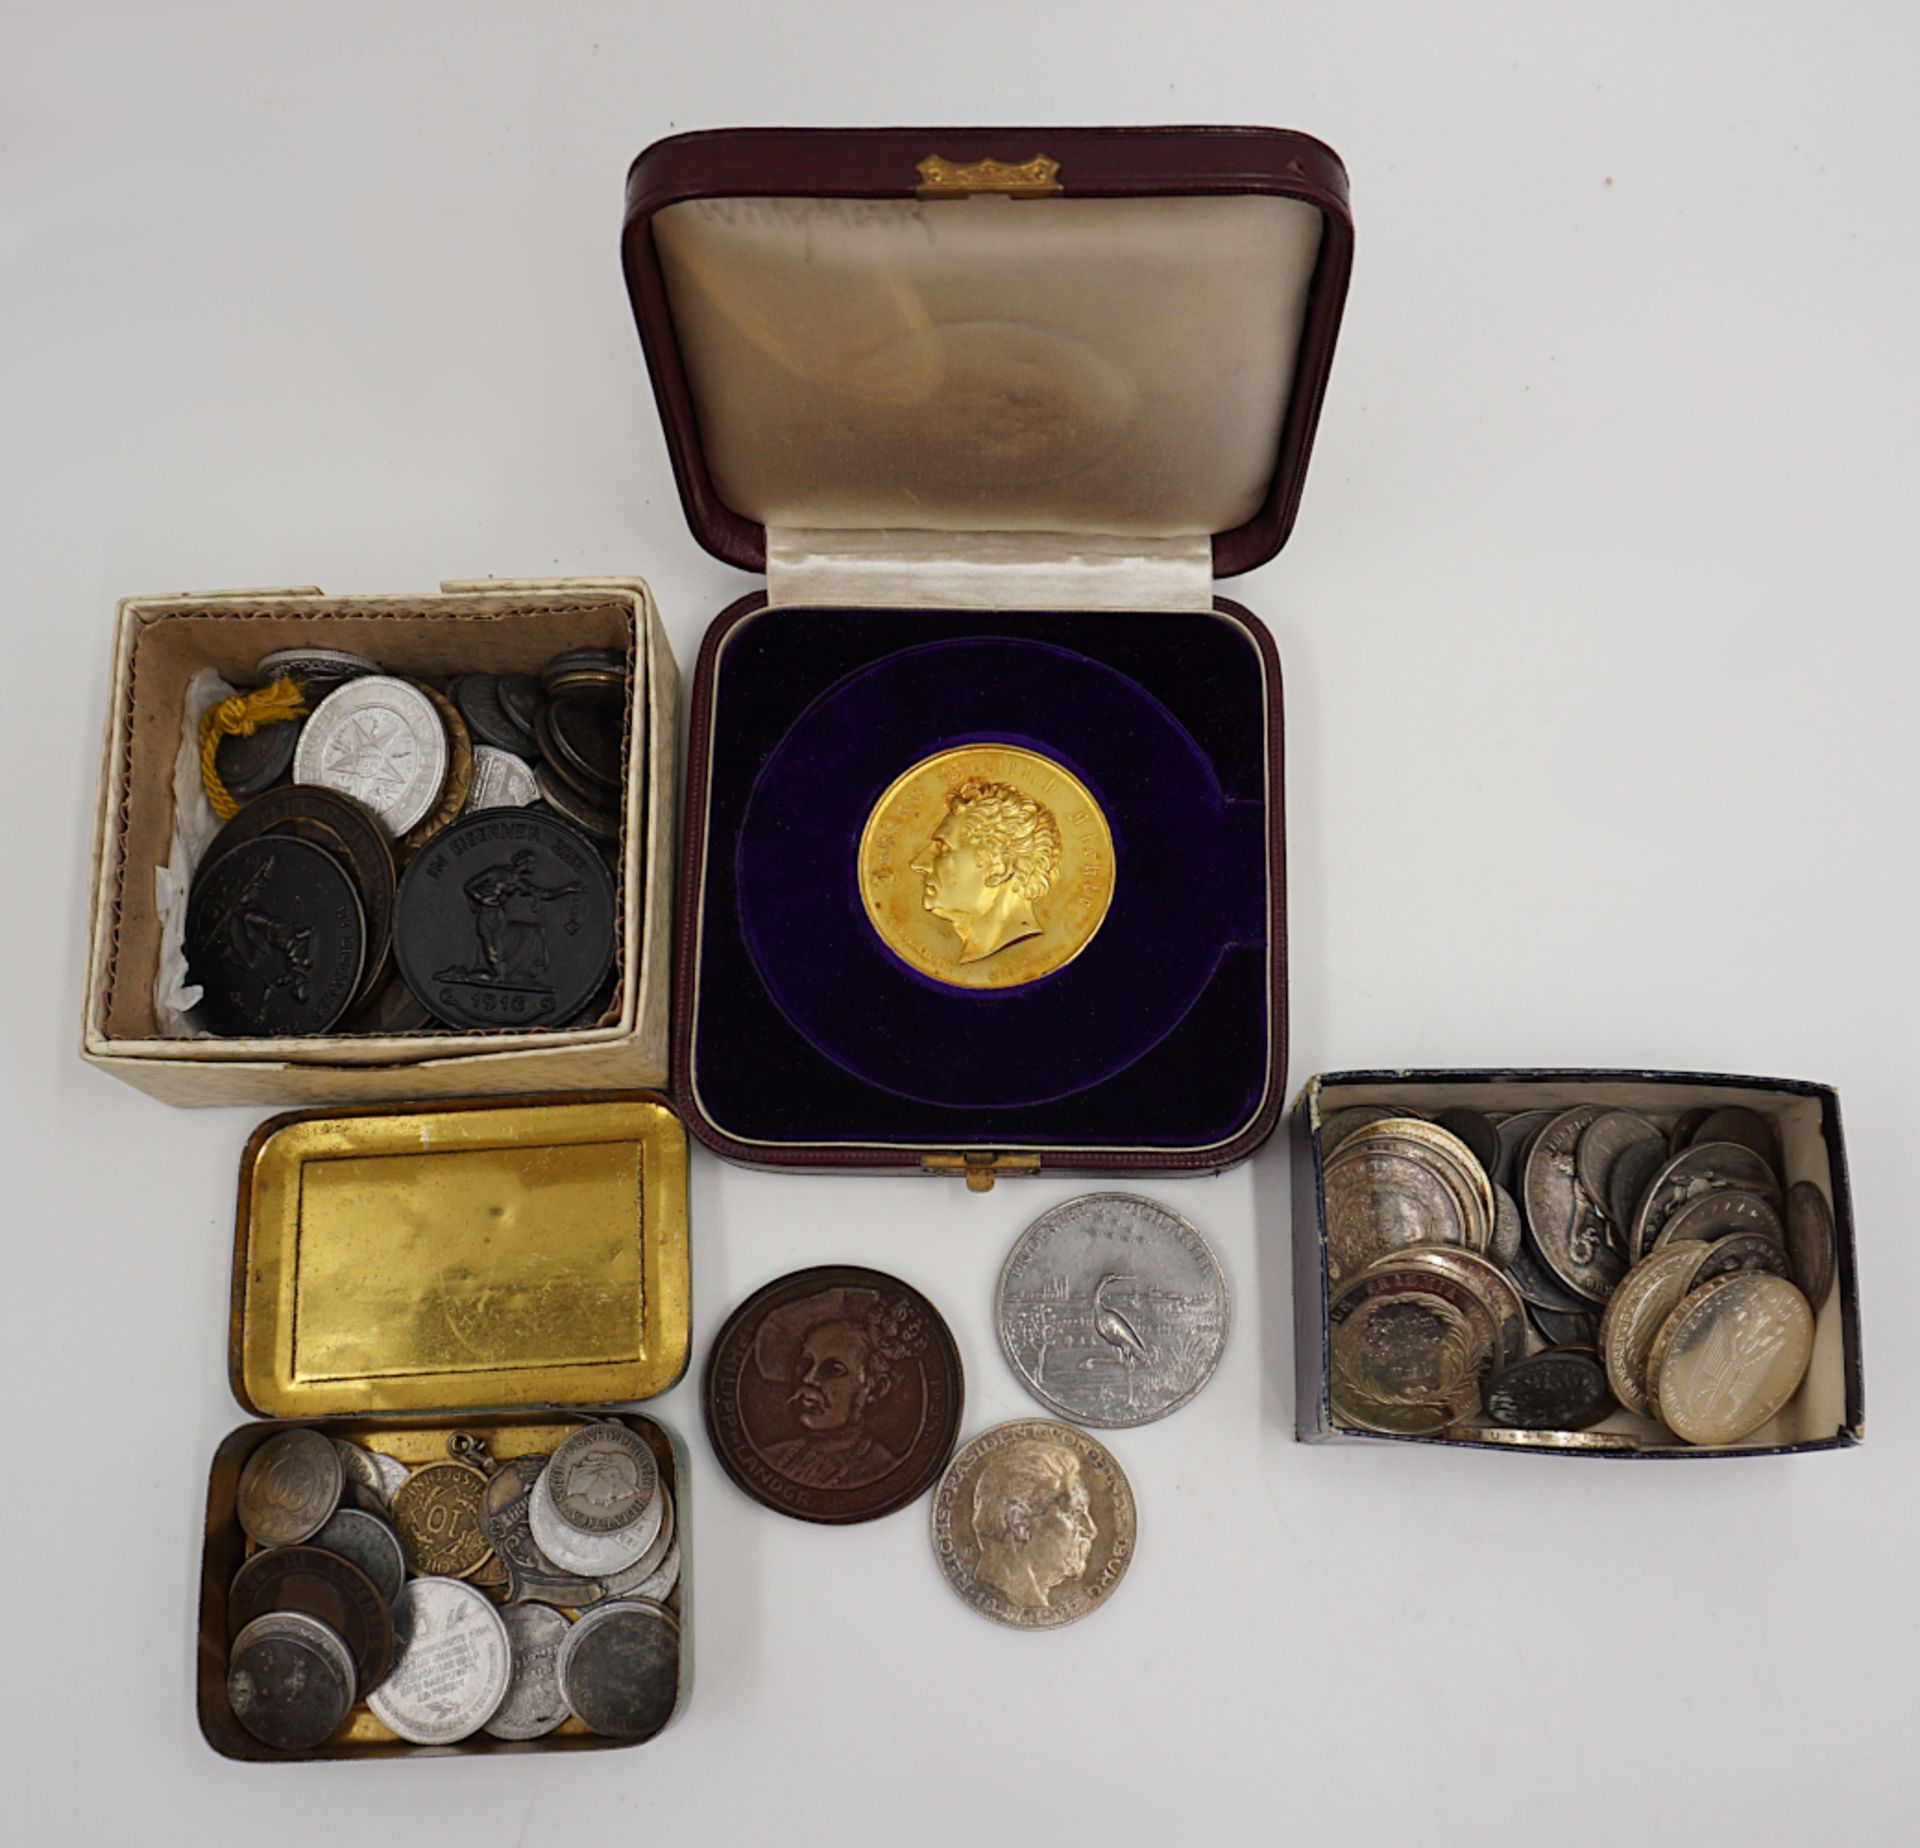 1 Konvolut Münzen/ Medaillen: Silber, Metall u.a. J.G. FICHTE, min. BRD 10DM, Zahlgeld u.a., jeweils